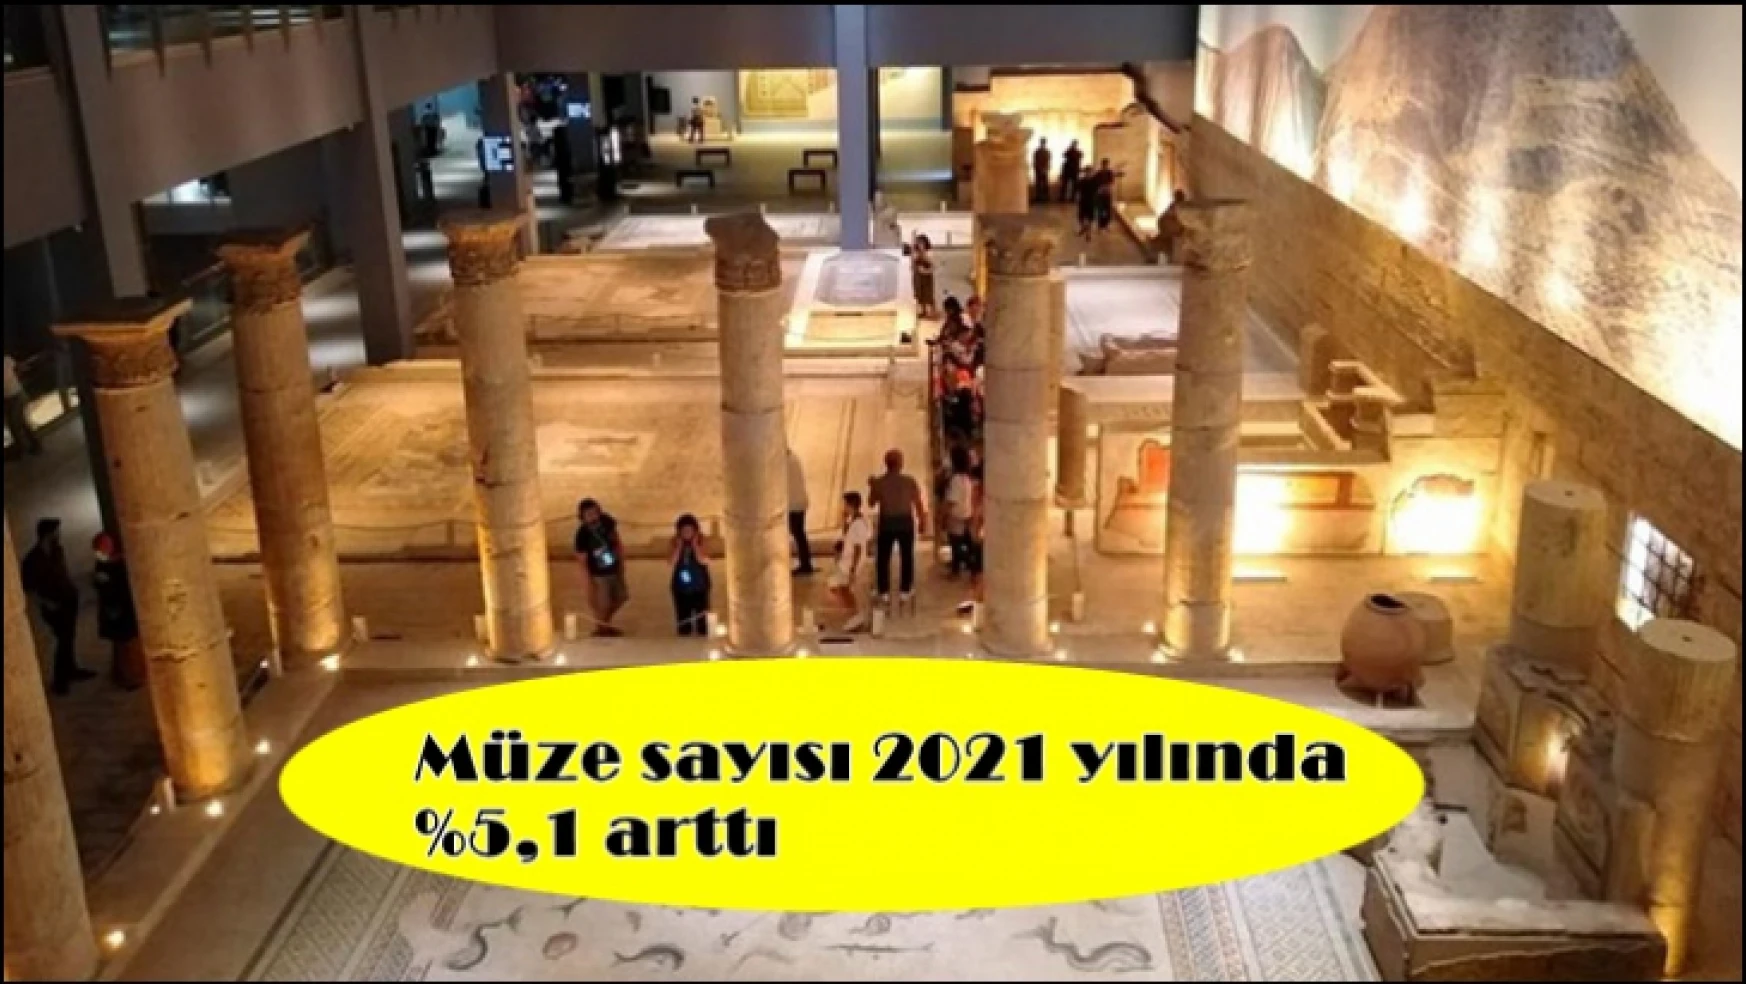 Müze sayısı 2021 yılında yüzde 5,1 arttı